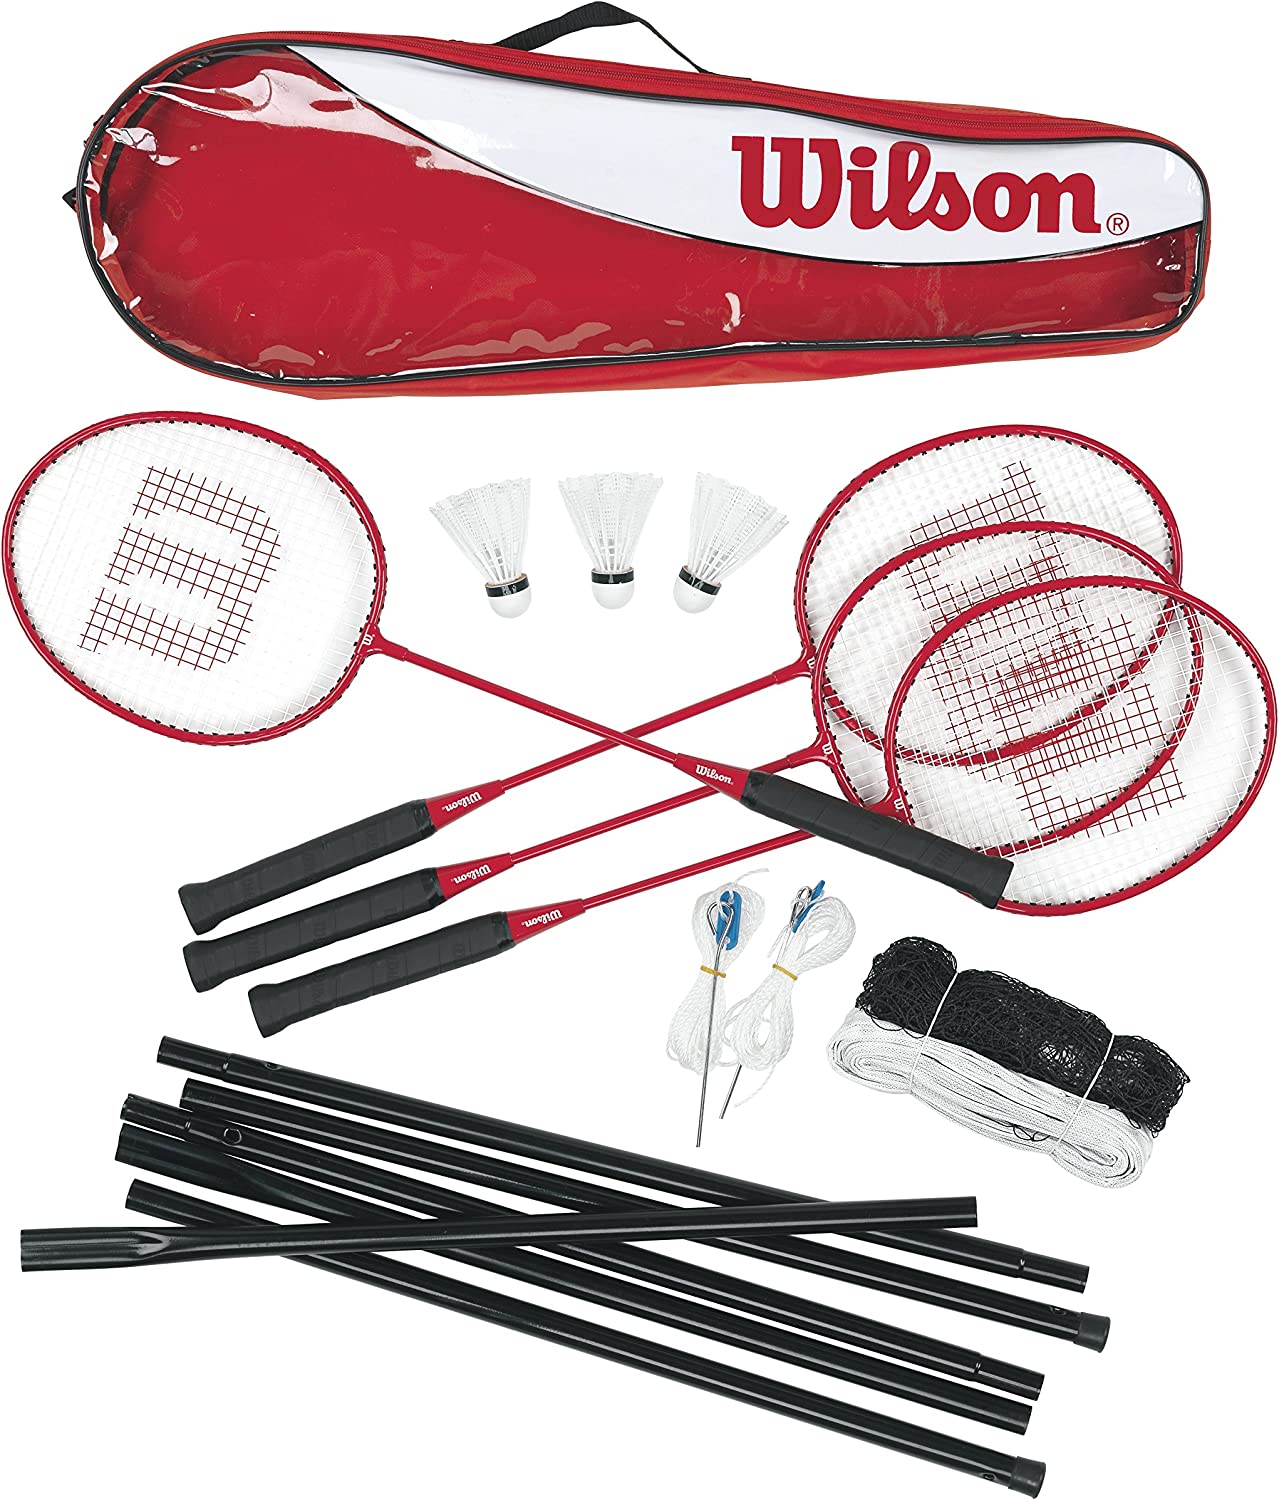 Bild zu Wilson Badminton-Set mit Tragetasche, Schlägern, Federbällen und Netz für 32€ (Vergleich: 44€)